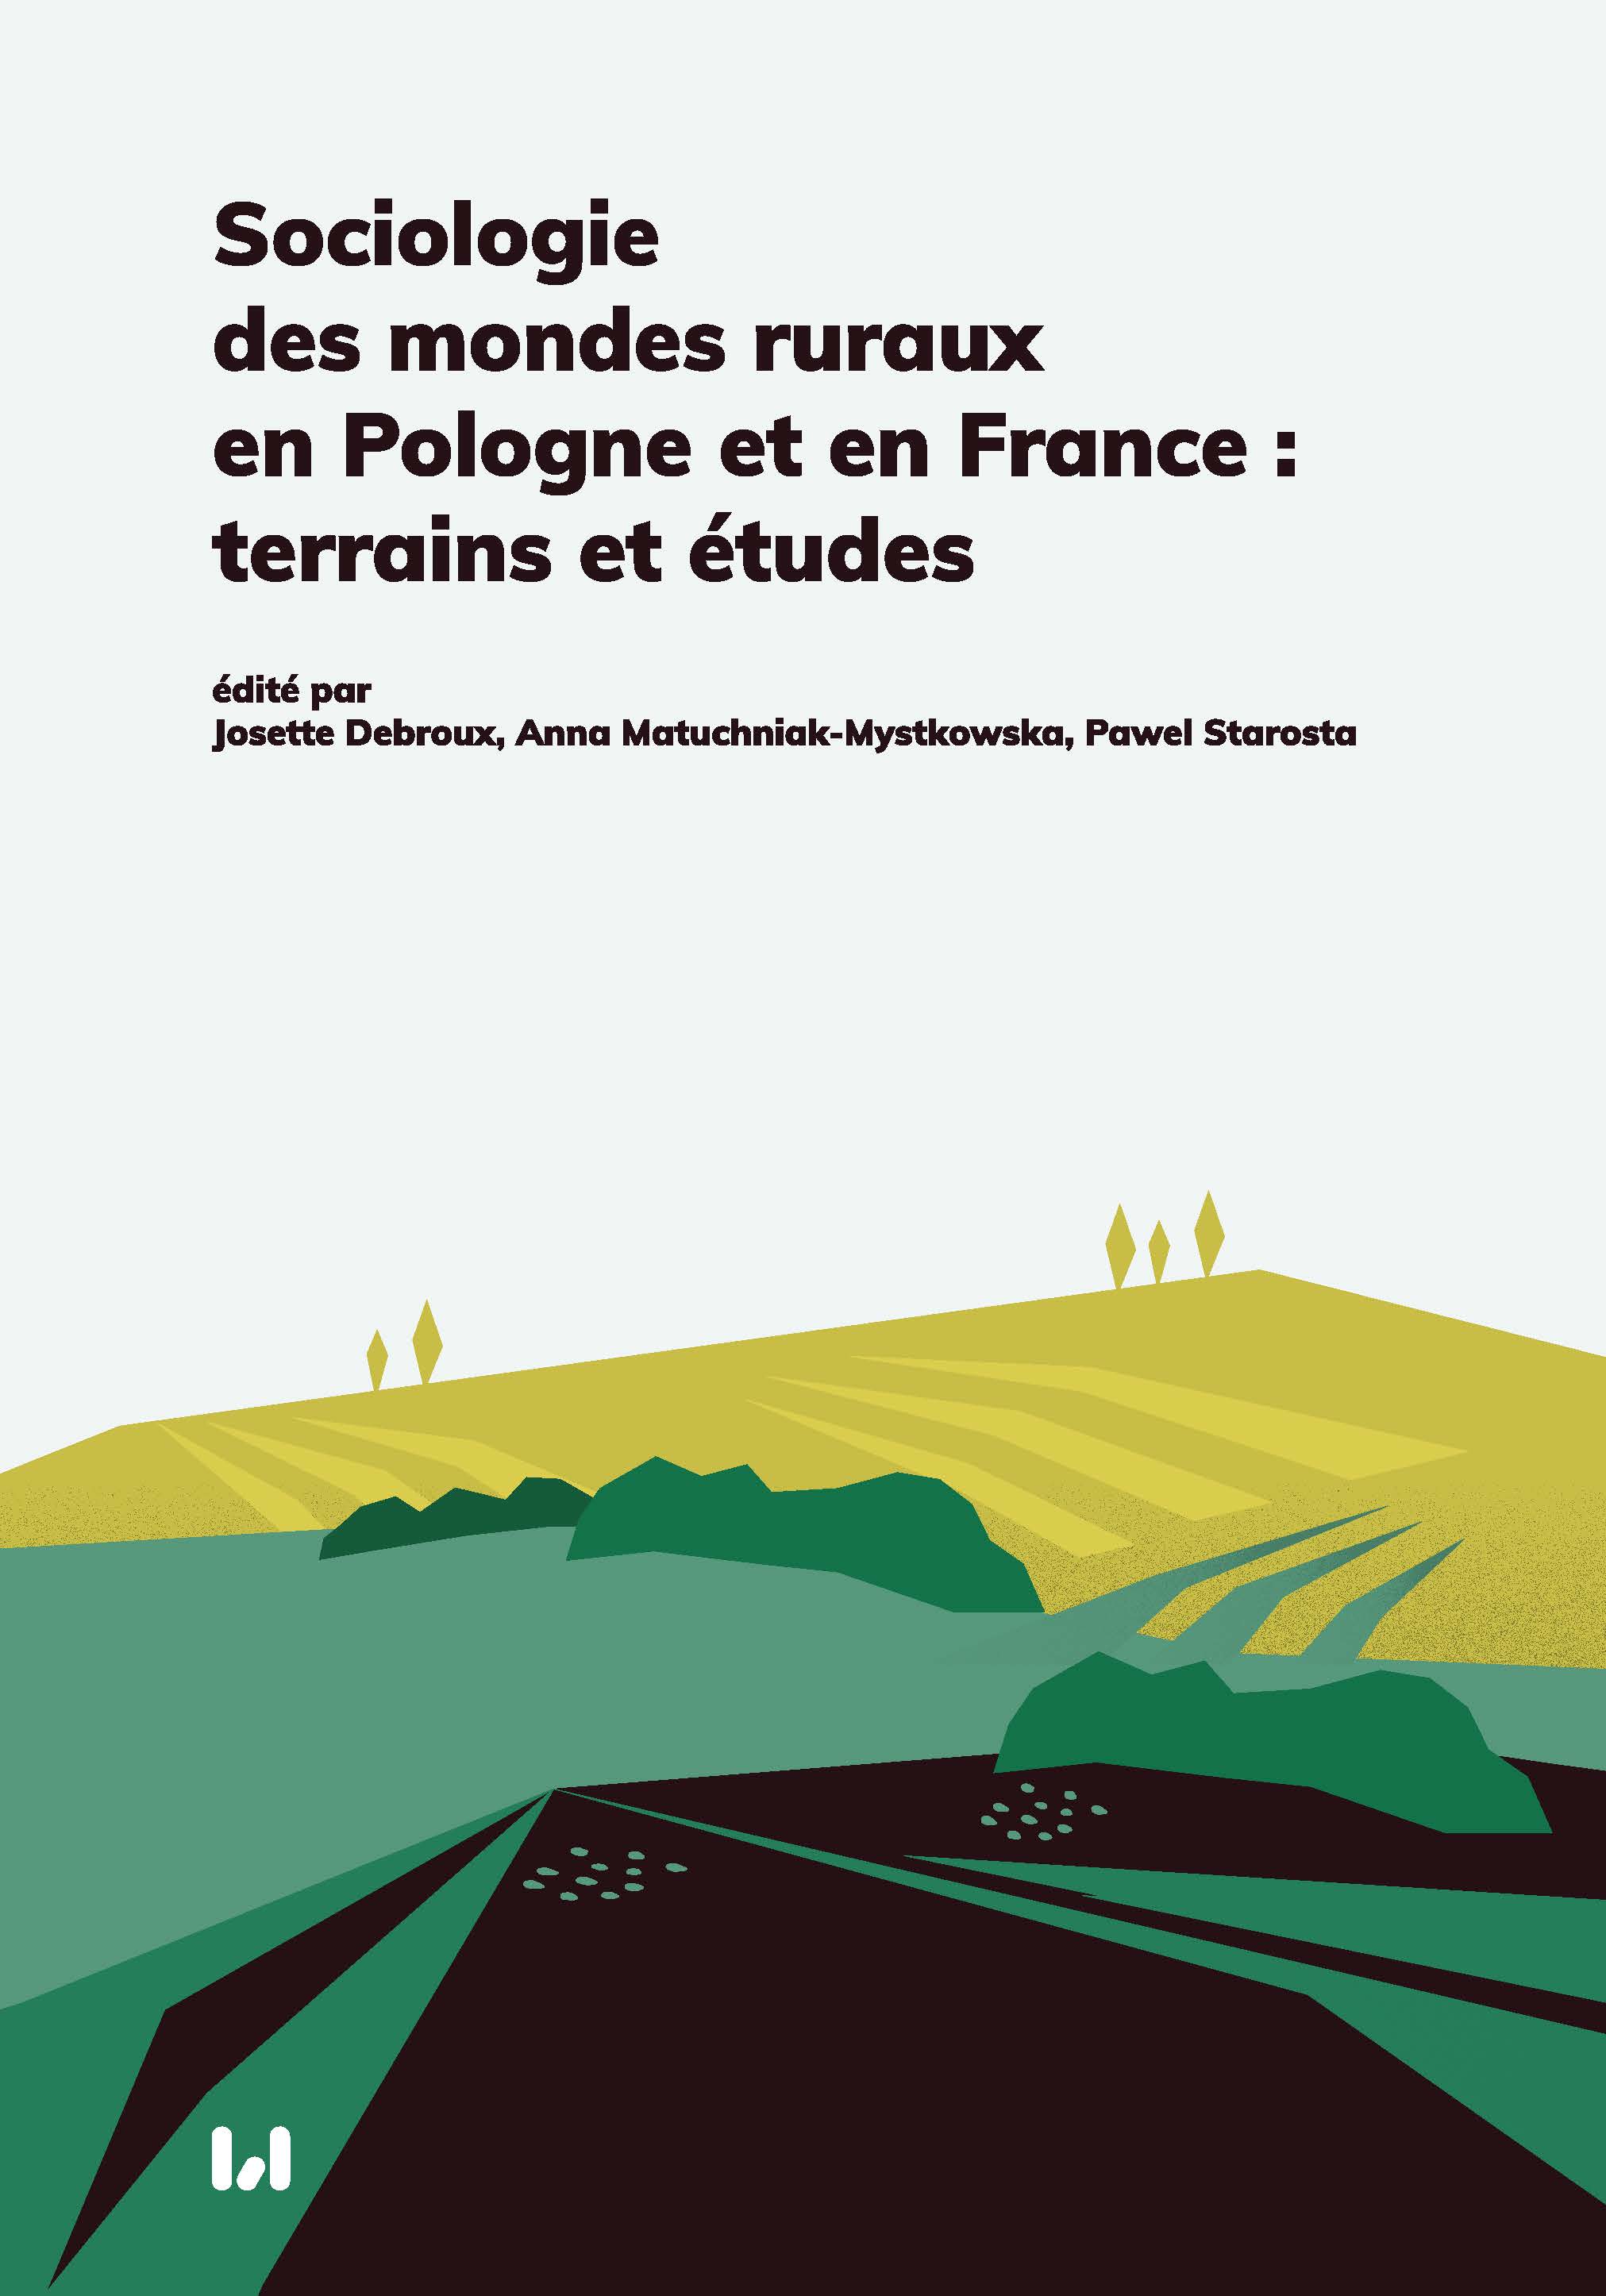 La sociologie rurale française : de la spécialisation à une « sociologie transversale »